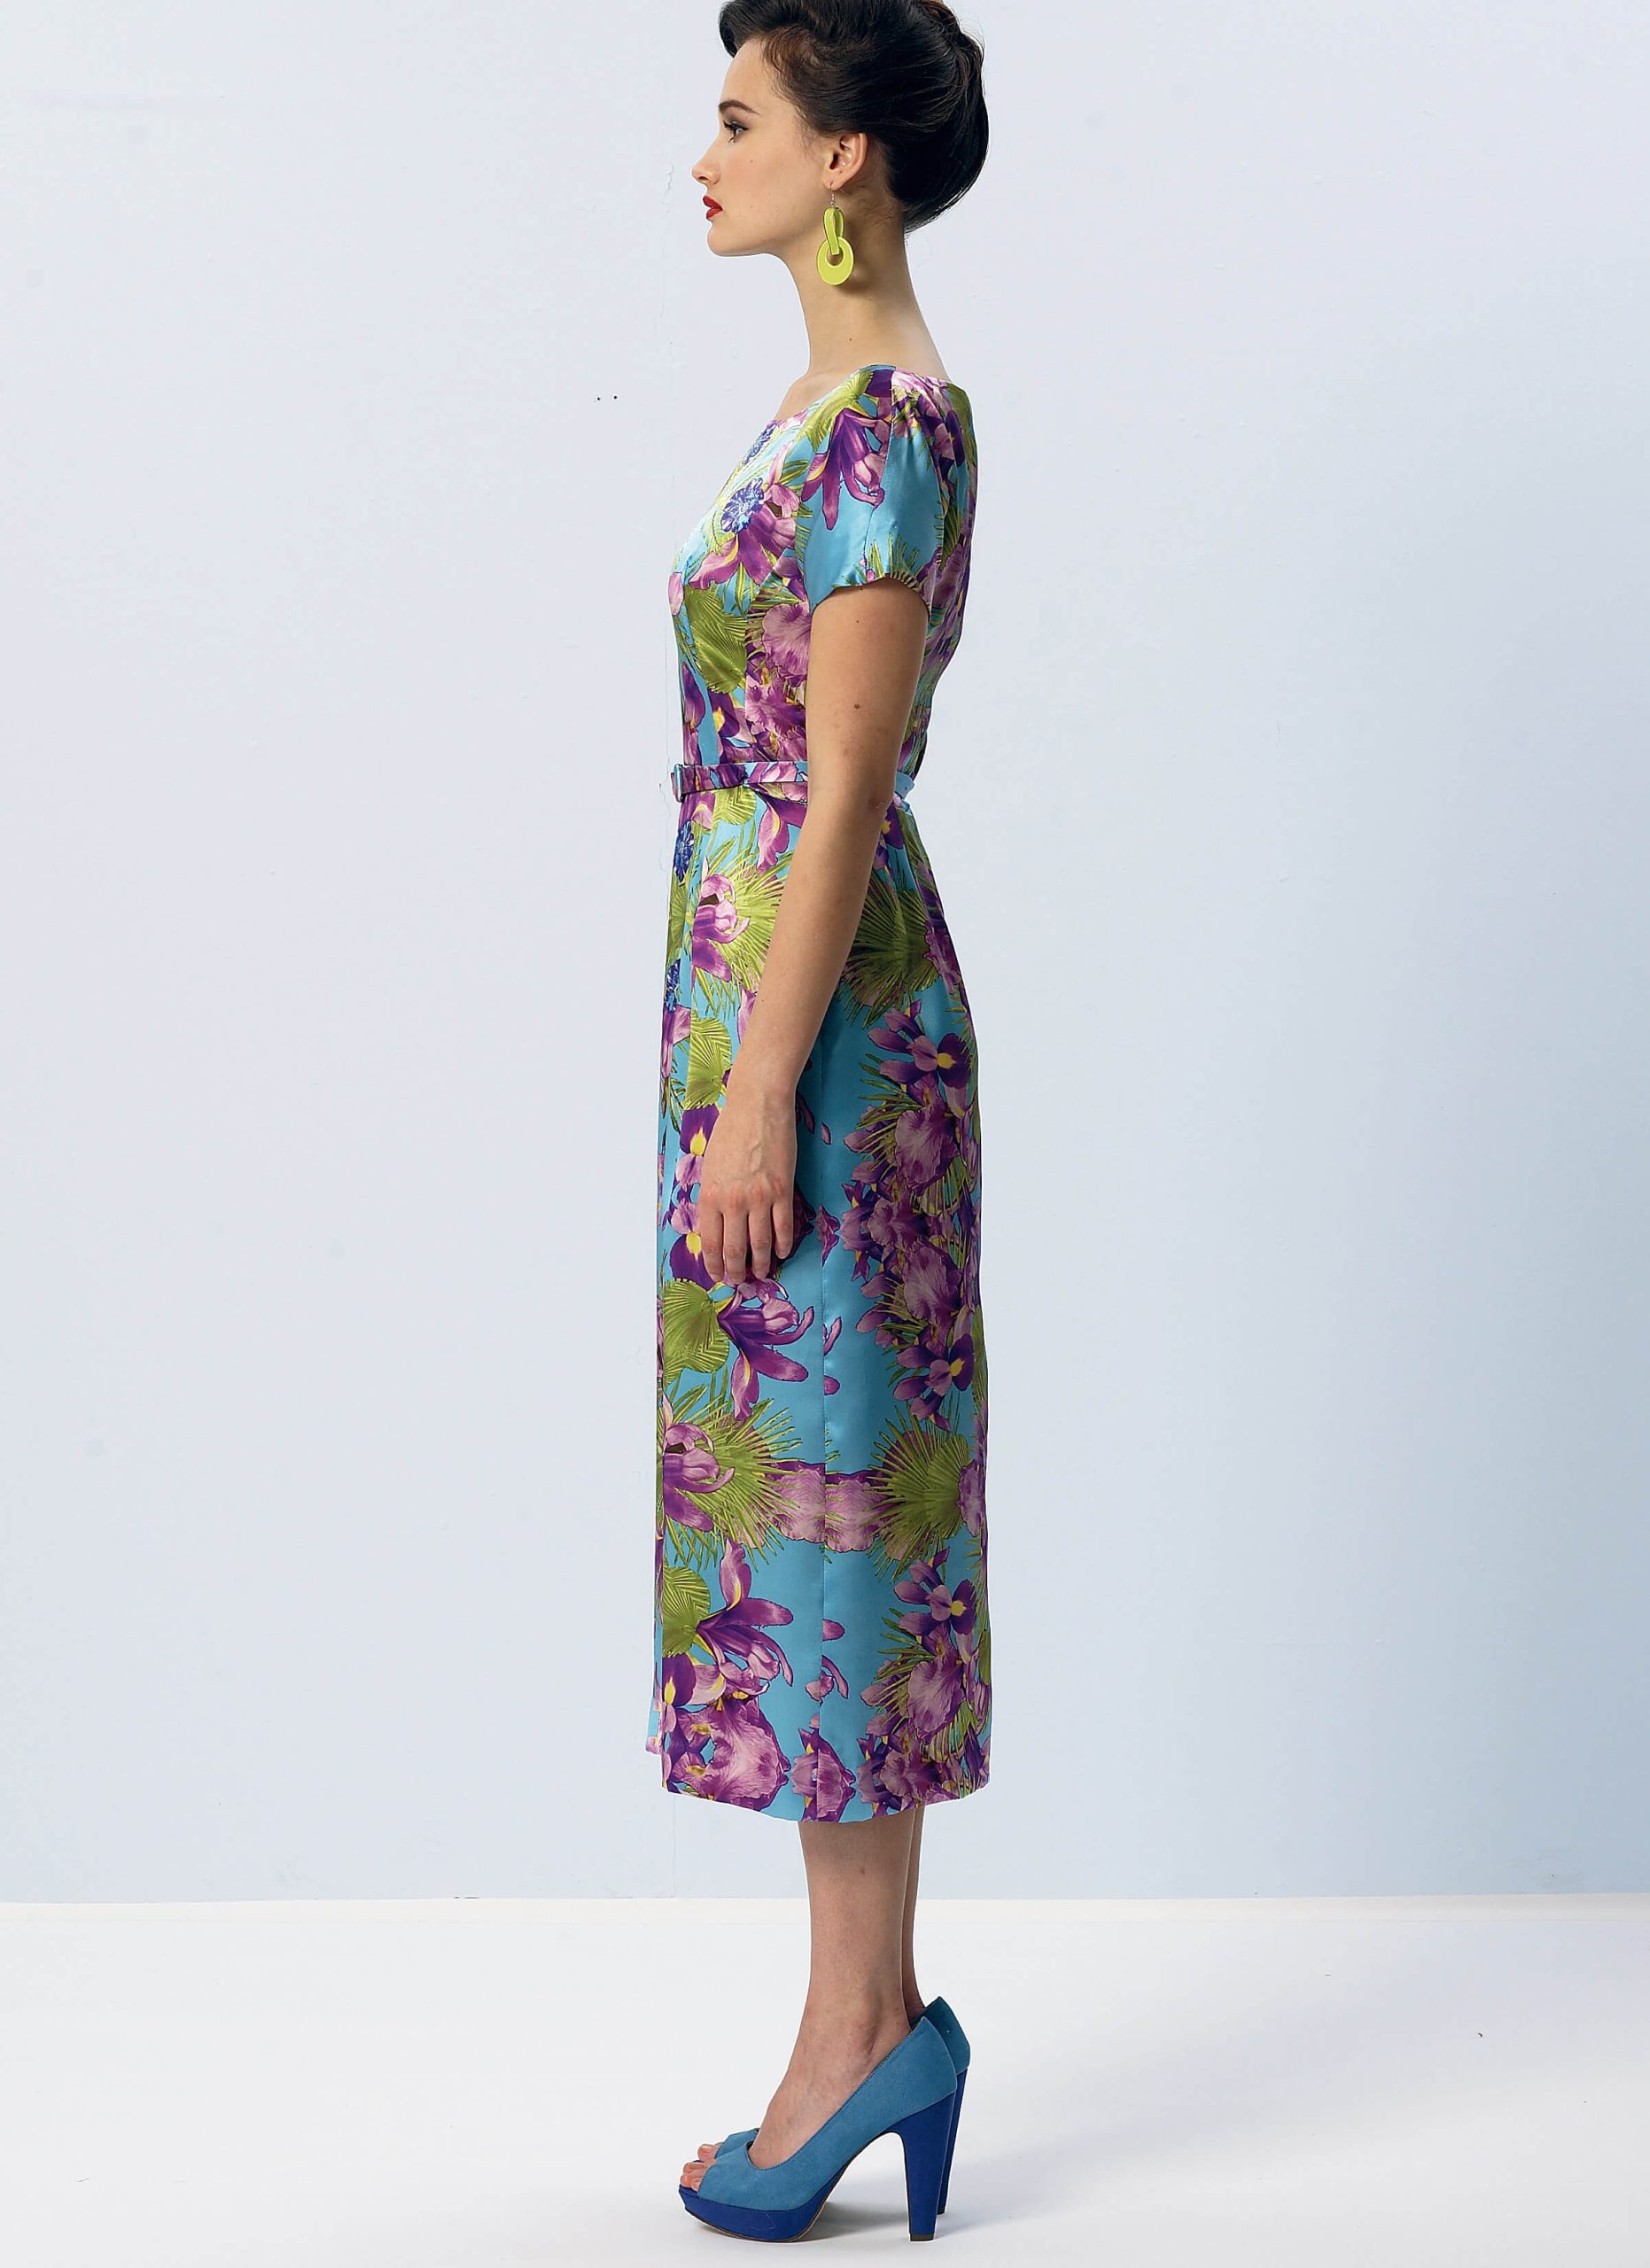 Vogue Patterns V8875 Misses' Dress, Belt, Coat and Detachable Collar